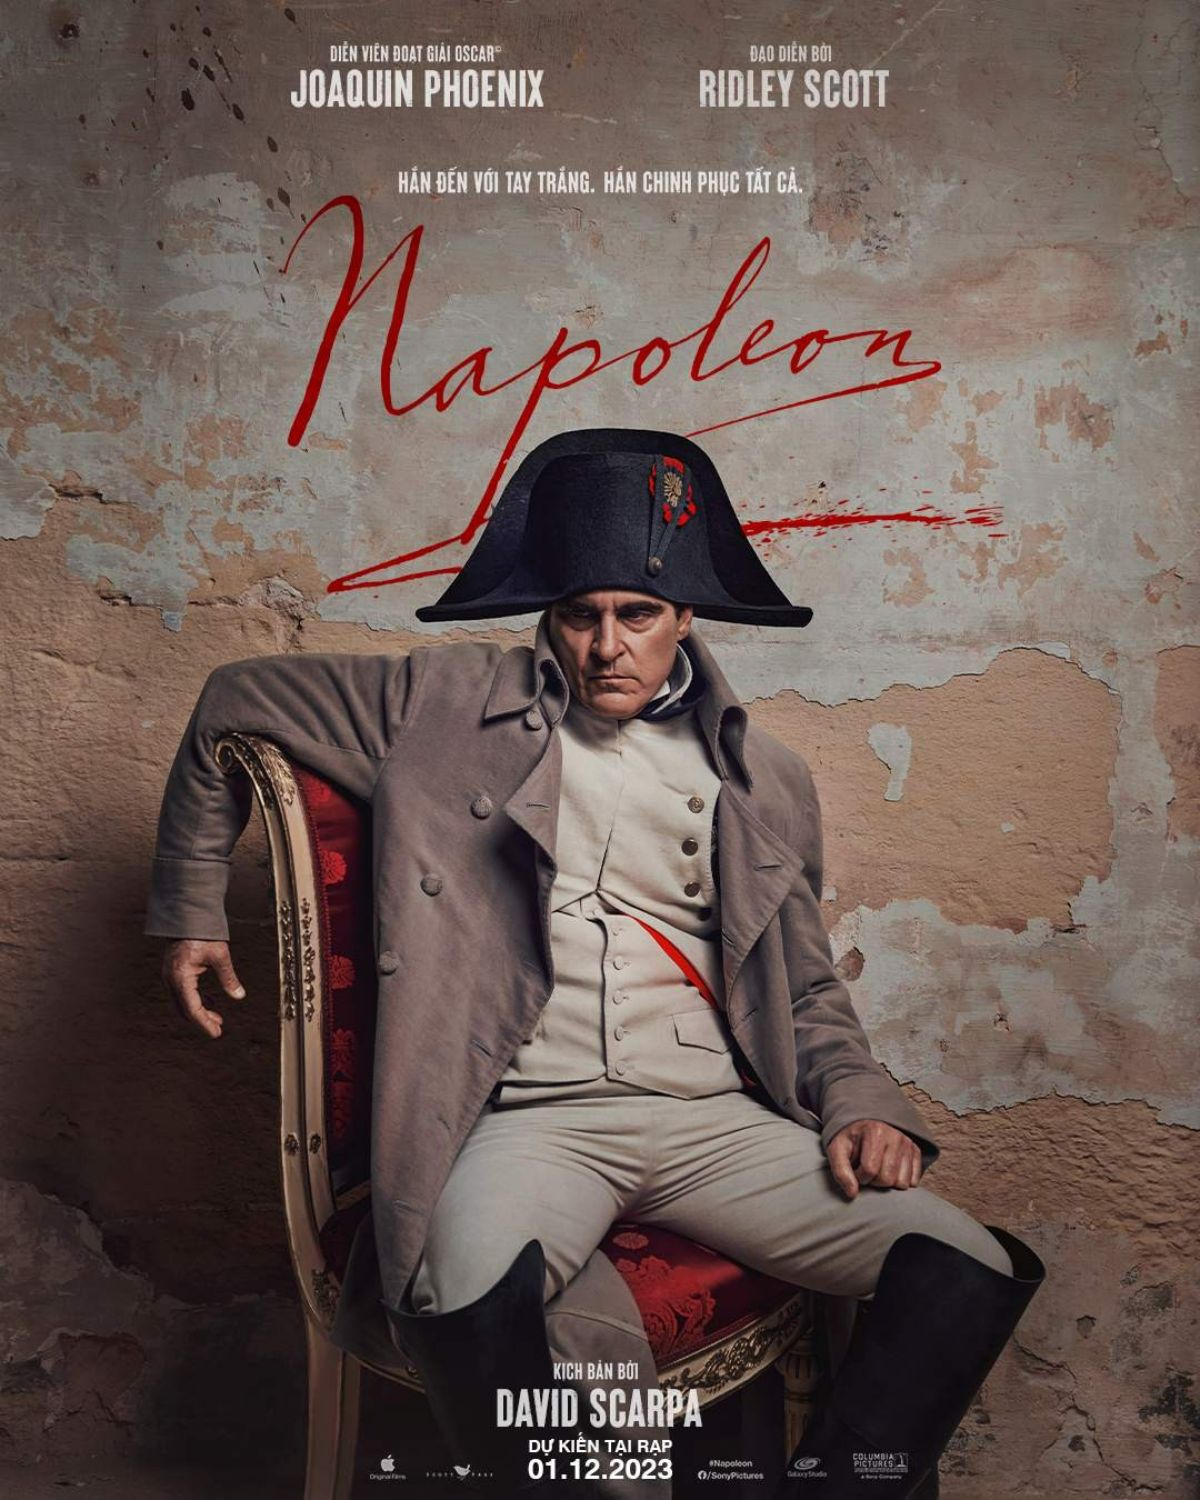 Đế chế Napoléon là bộ phim dựa trên câu chuyện có thật về cuộc đời Napoleon Bonaparte (1769 - 1821), nhà lãnh đạo quân sự, chính trị gia và hoàng đế của Pháp